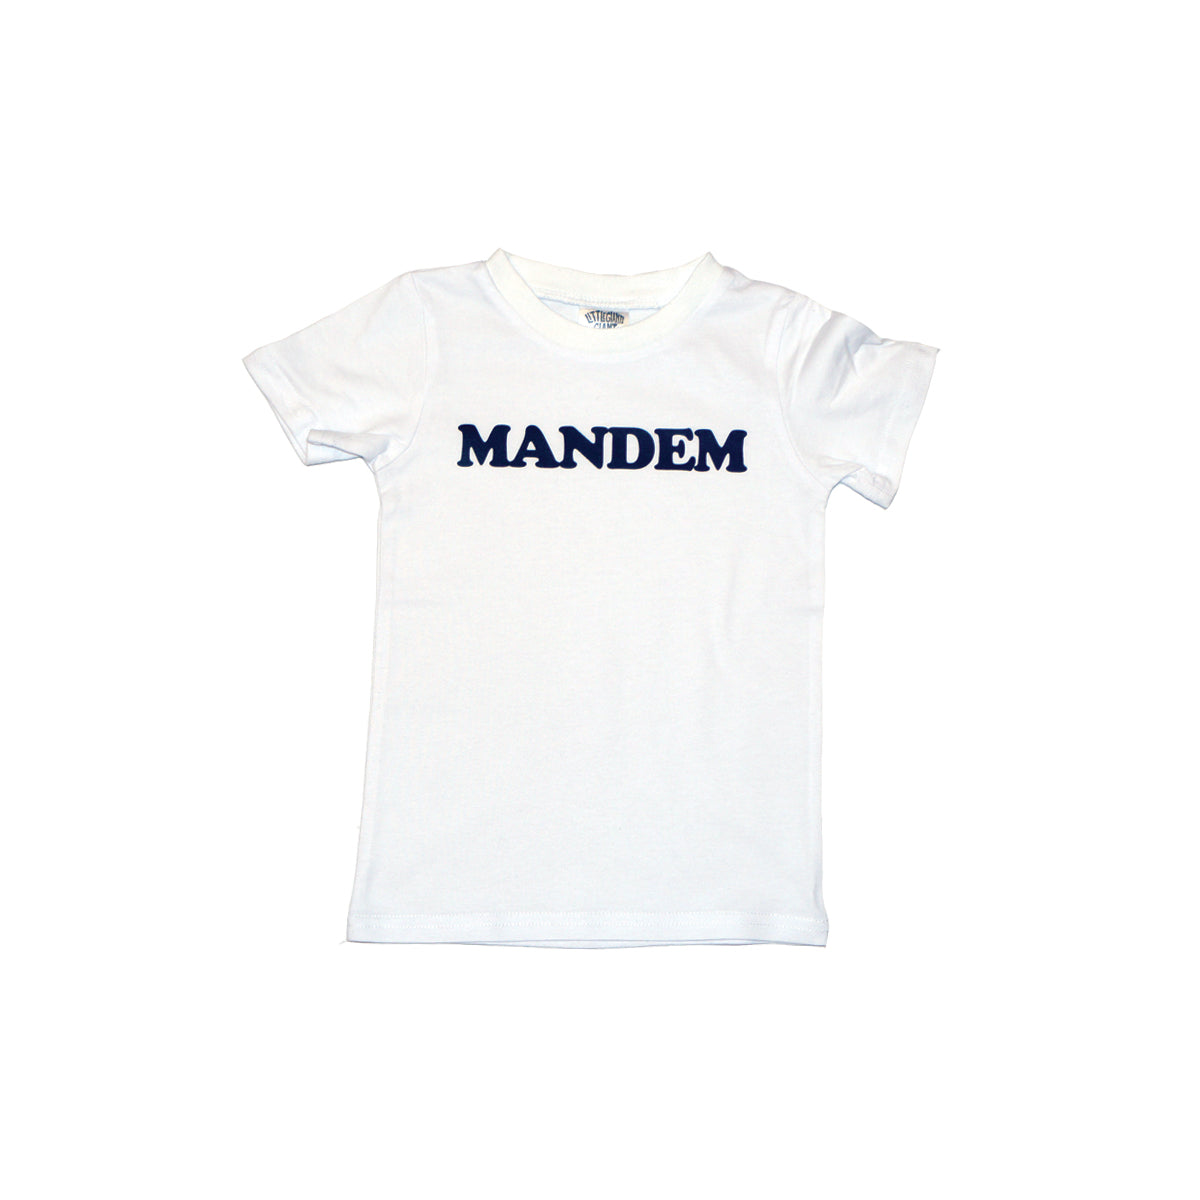 The Mandem T-shirt (White)